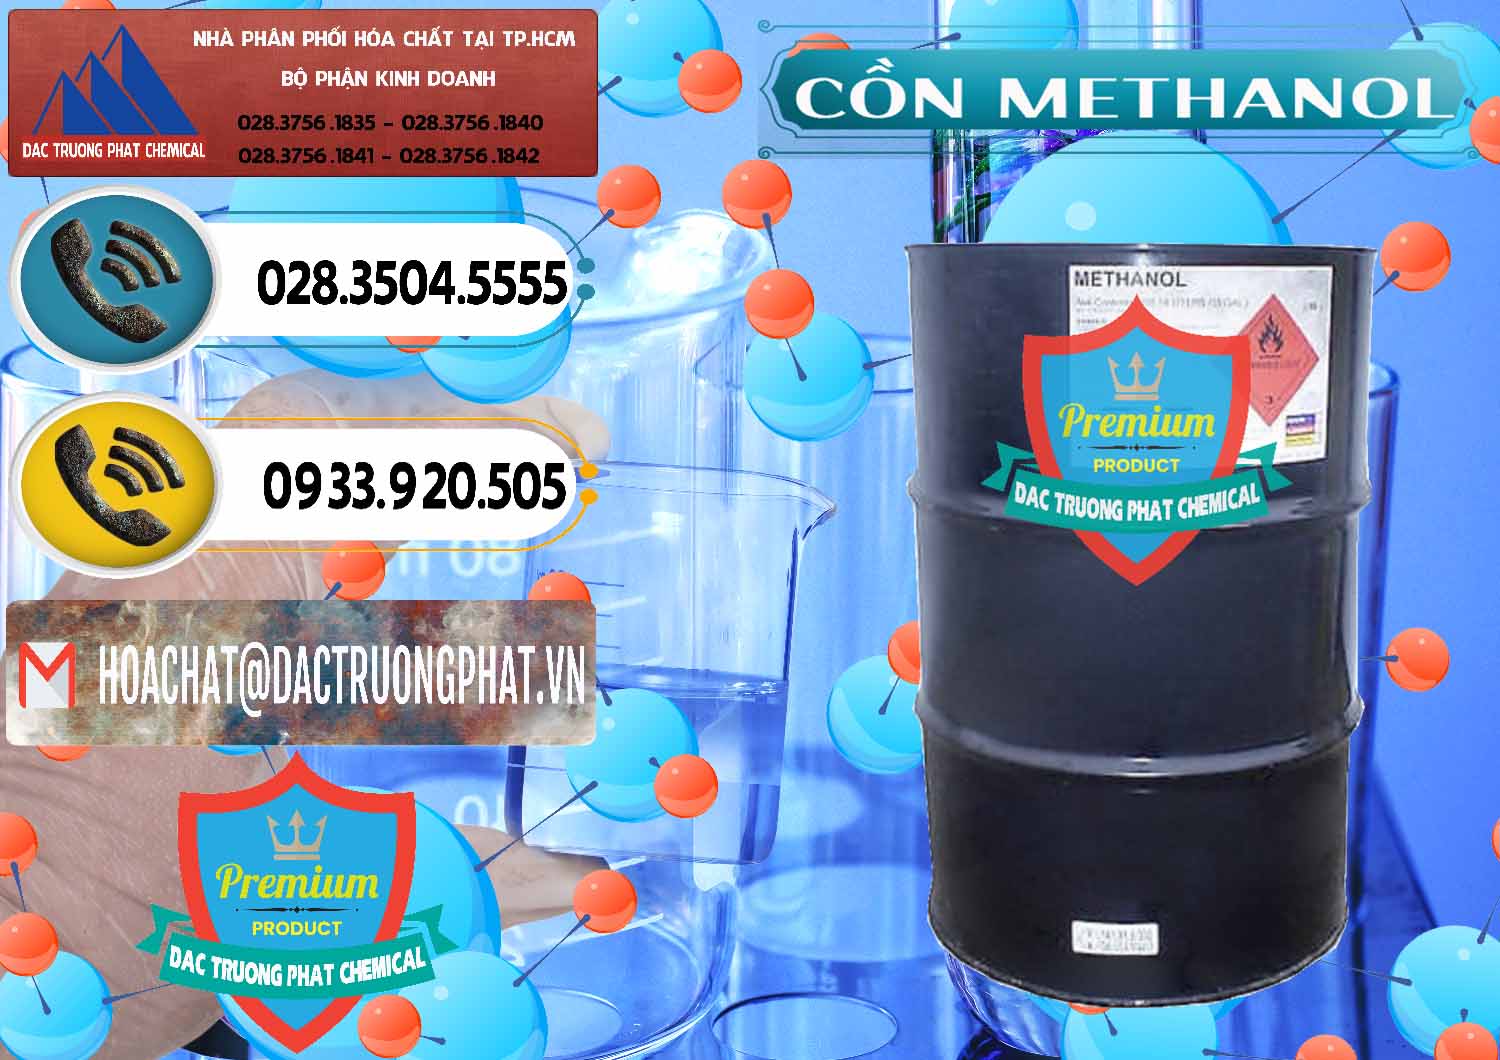 Cty chuyên bán _ cung ứng Cồn Methanol - Methyl Alcohol Mã Lai Malaysia - 0331 - Nơi chuyên kinh doanh ( phân phối ) hóa chất tại TP.HCM - hoachatdetnhuom.vn